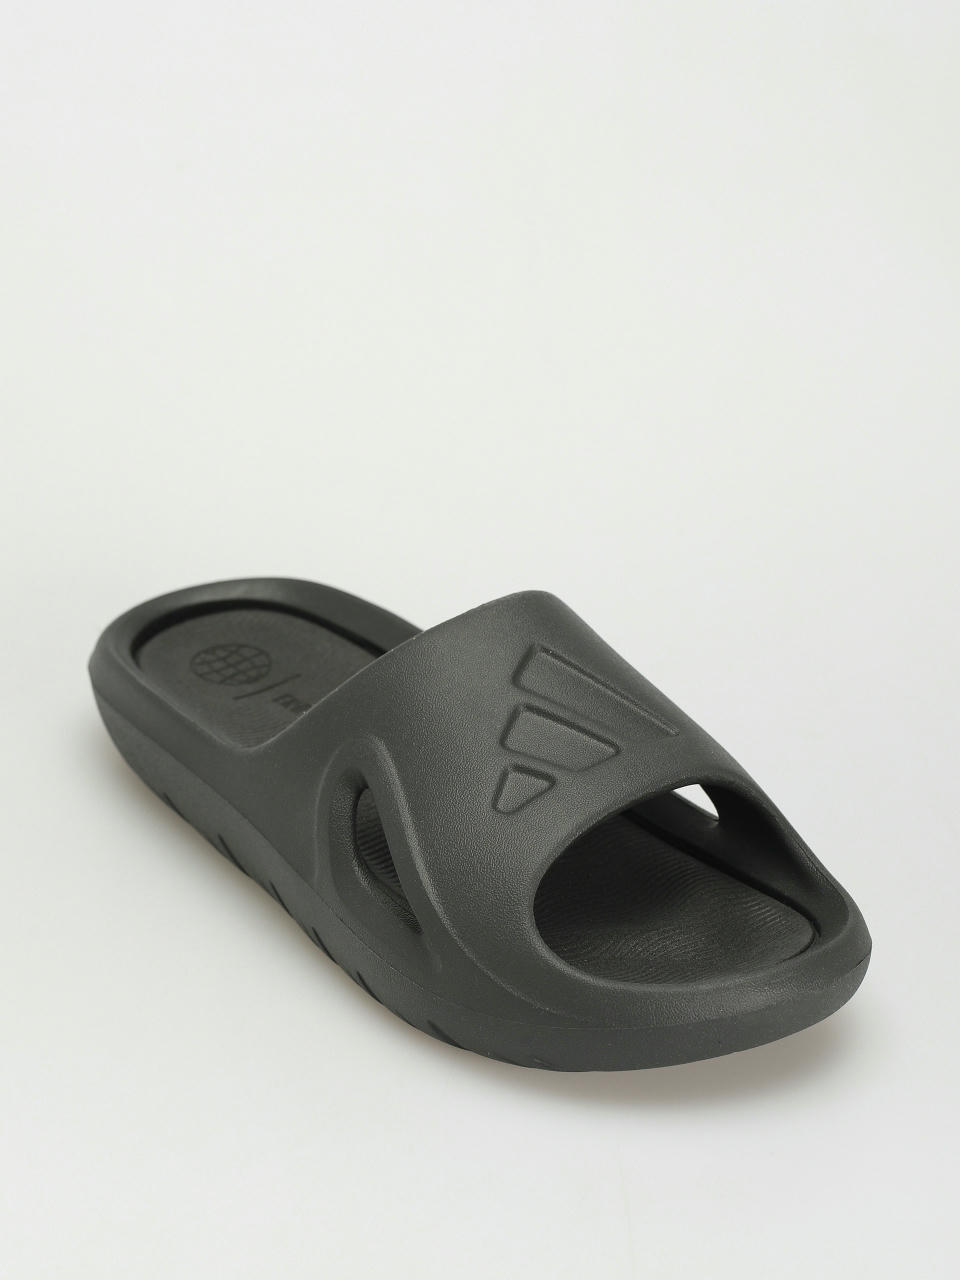 adidas Originals Adicane Flip flops (carbon/carbon/cblack)